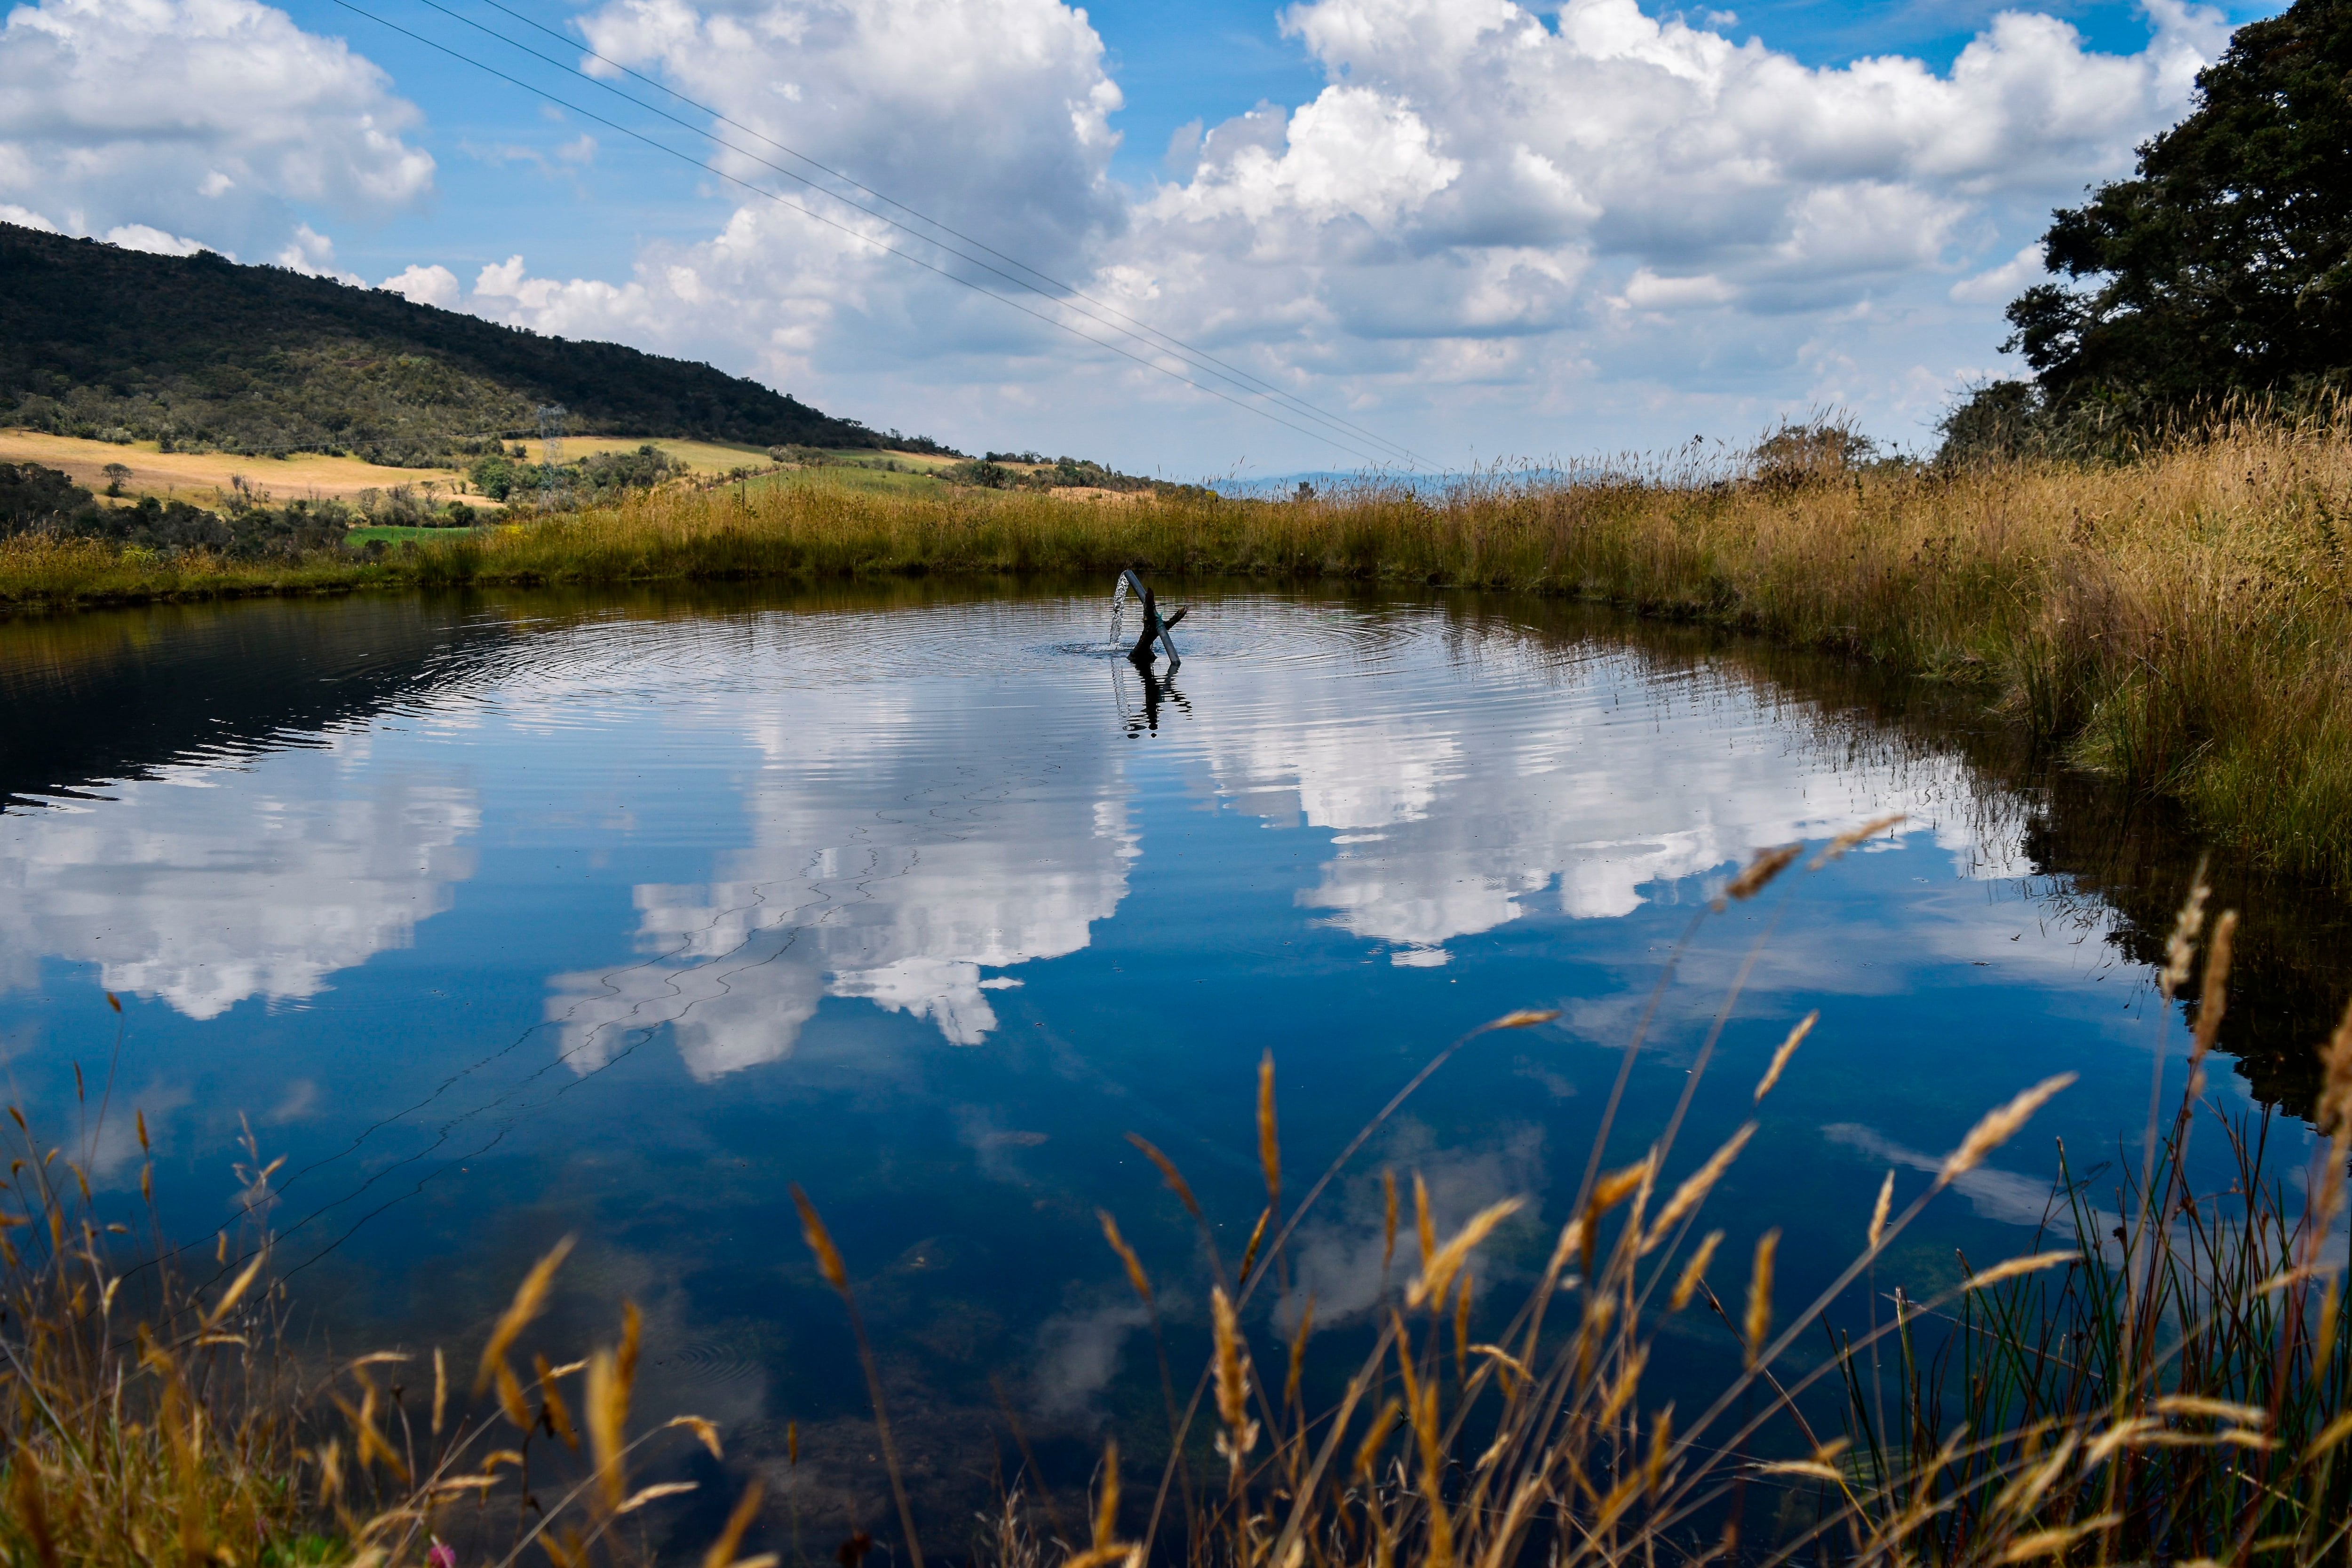 Ahorro del 100% del consumo de agua de riego gracias a la instalación de plantas nativas y autóctonas, es uno de los logros de L'Oreal (EFE/Camilo García/Archivo)
